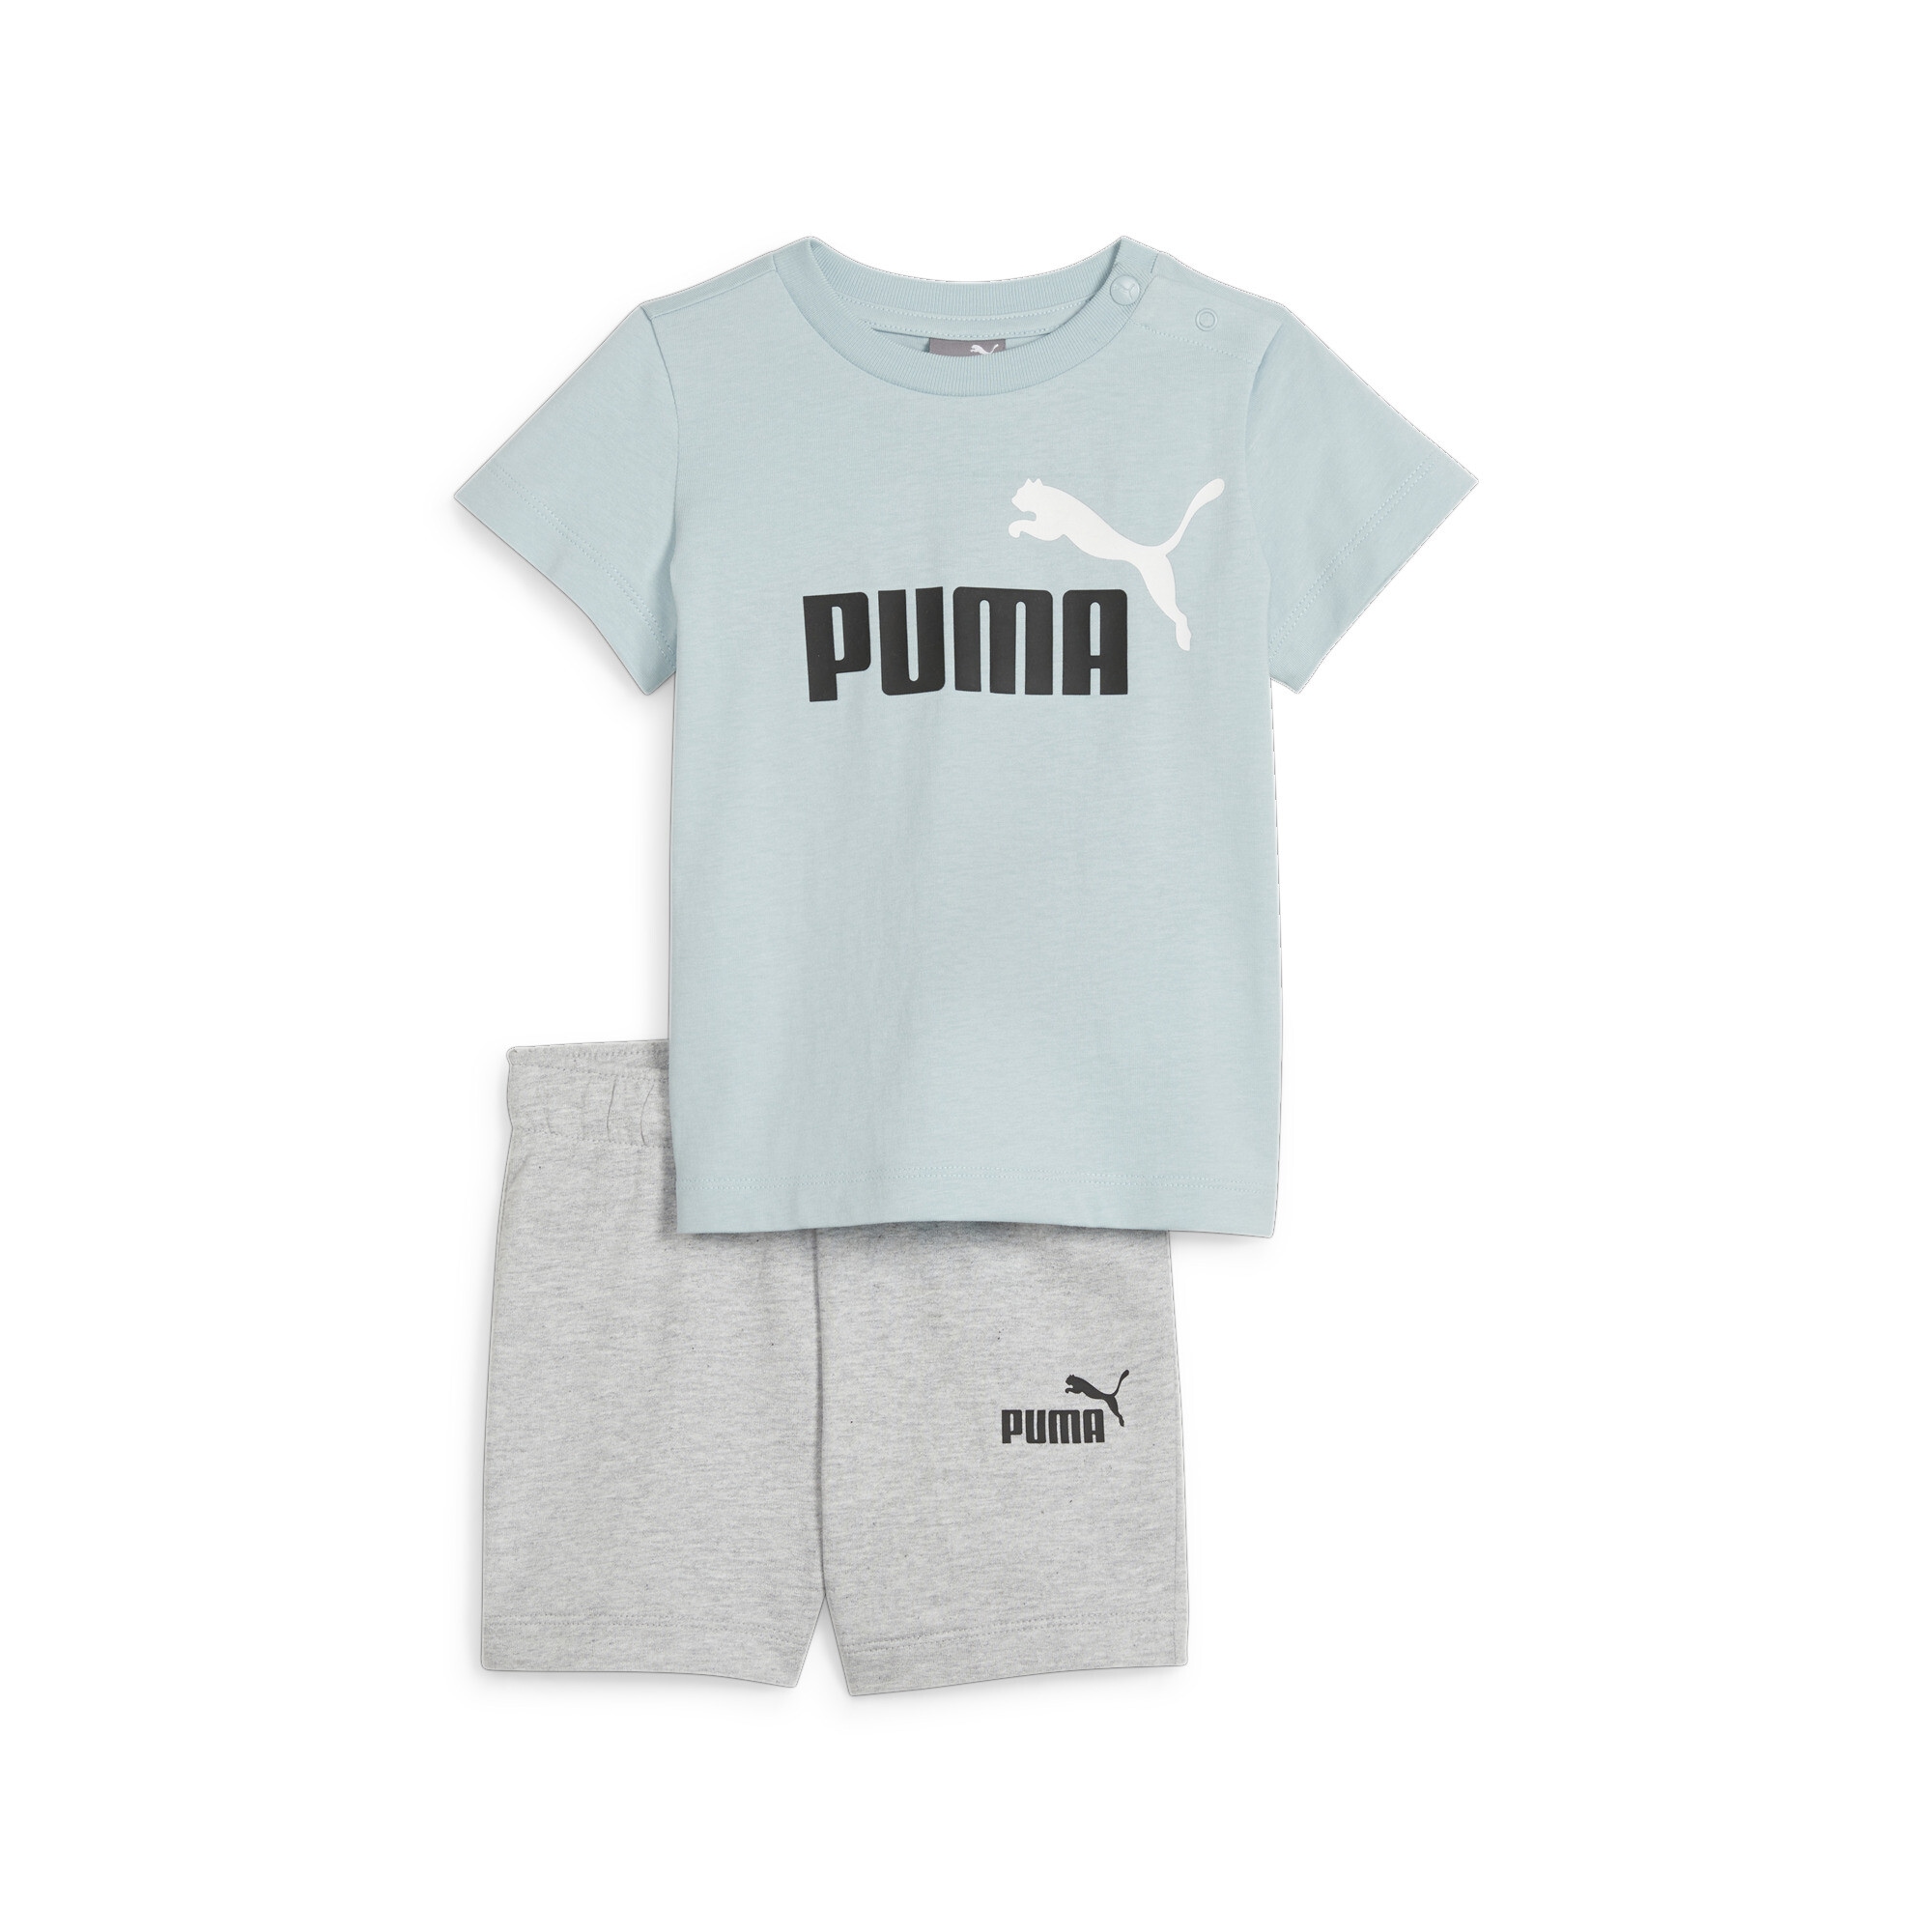 PUMA Jogginganzug »Minicats Set aus T-Shirt und Shorts Kinder«